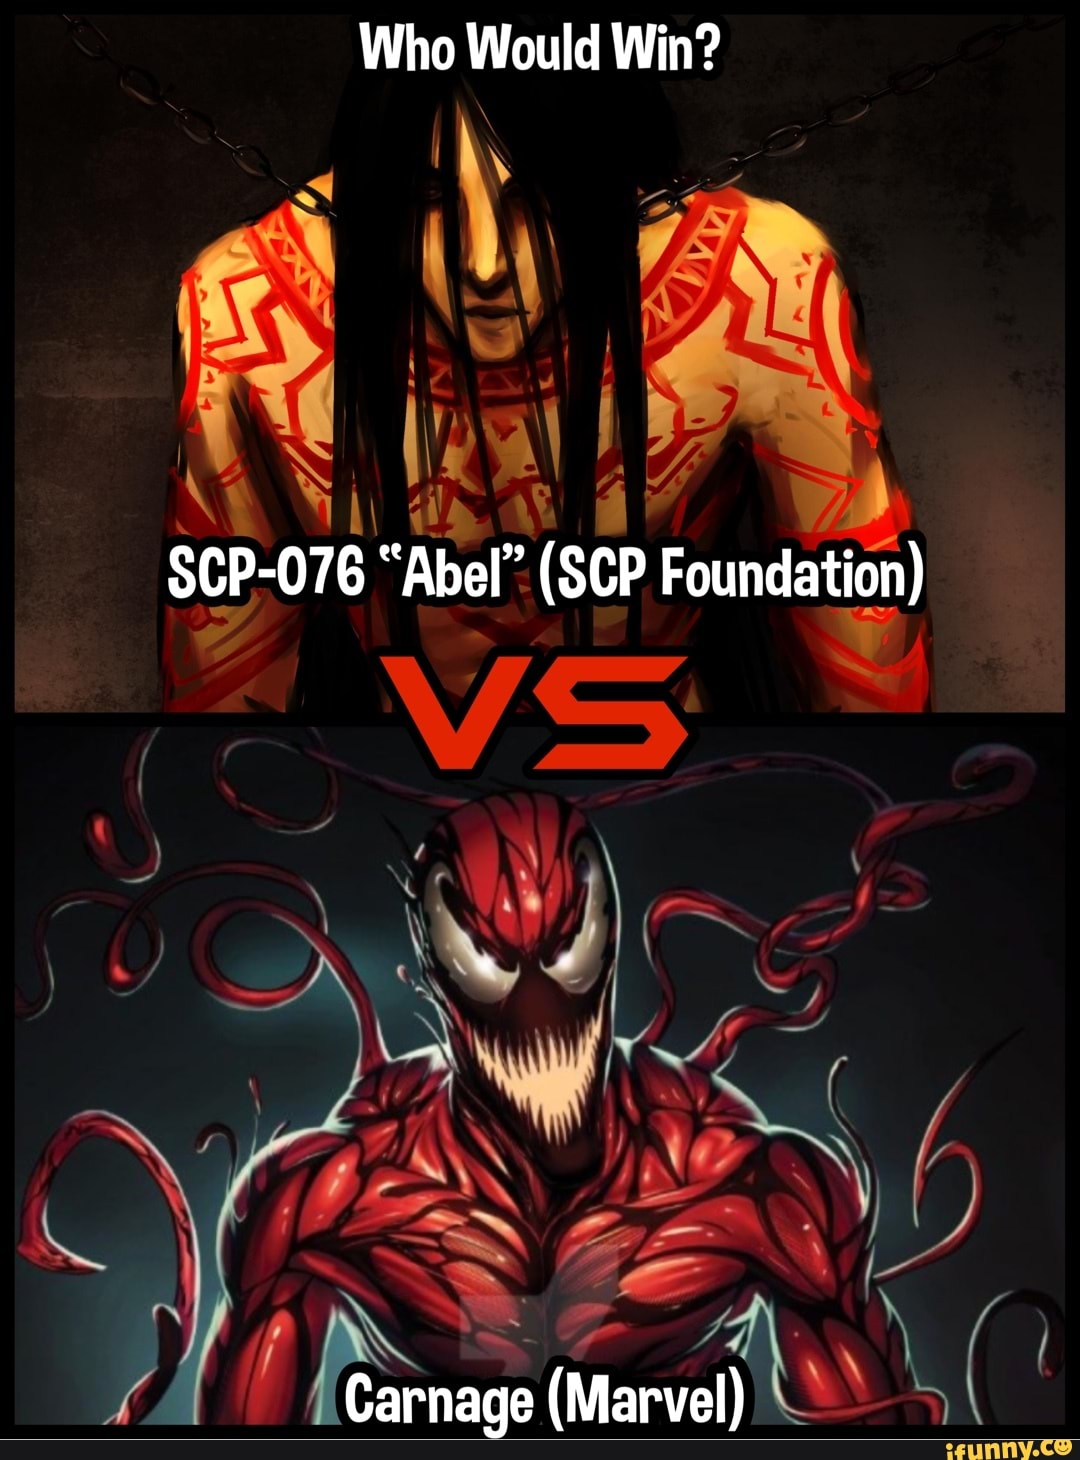 SCP-076 (SCP Foundation) VS Wamuu (JoJo's Bizarre Adventure). Who would  win? - iFunny Brazil